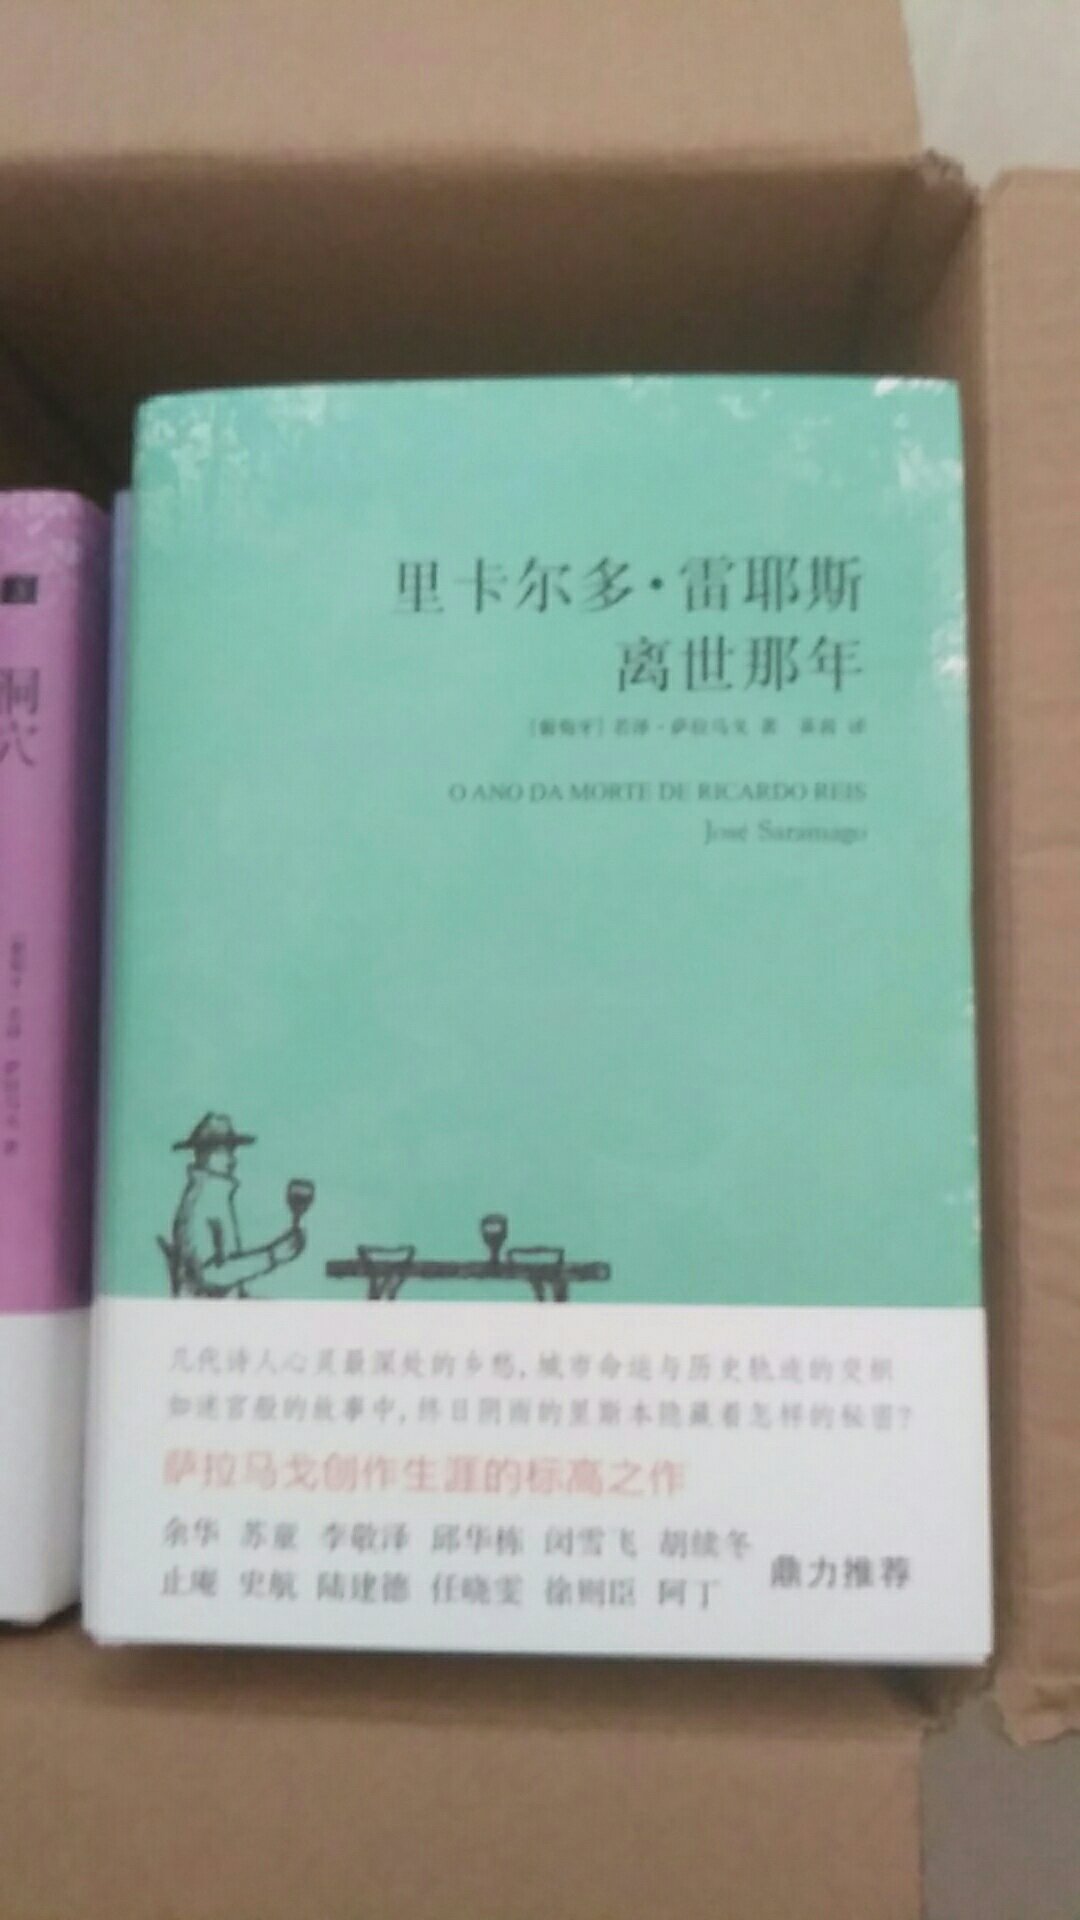 书很好，萨拉马戈是我最喜欢的作家之一，希望他的书在中国能多出几本